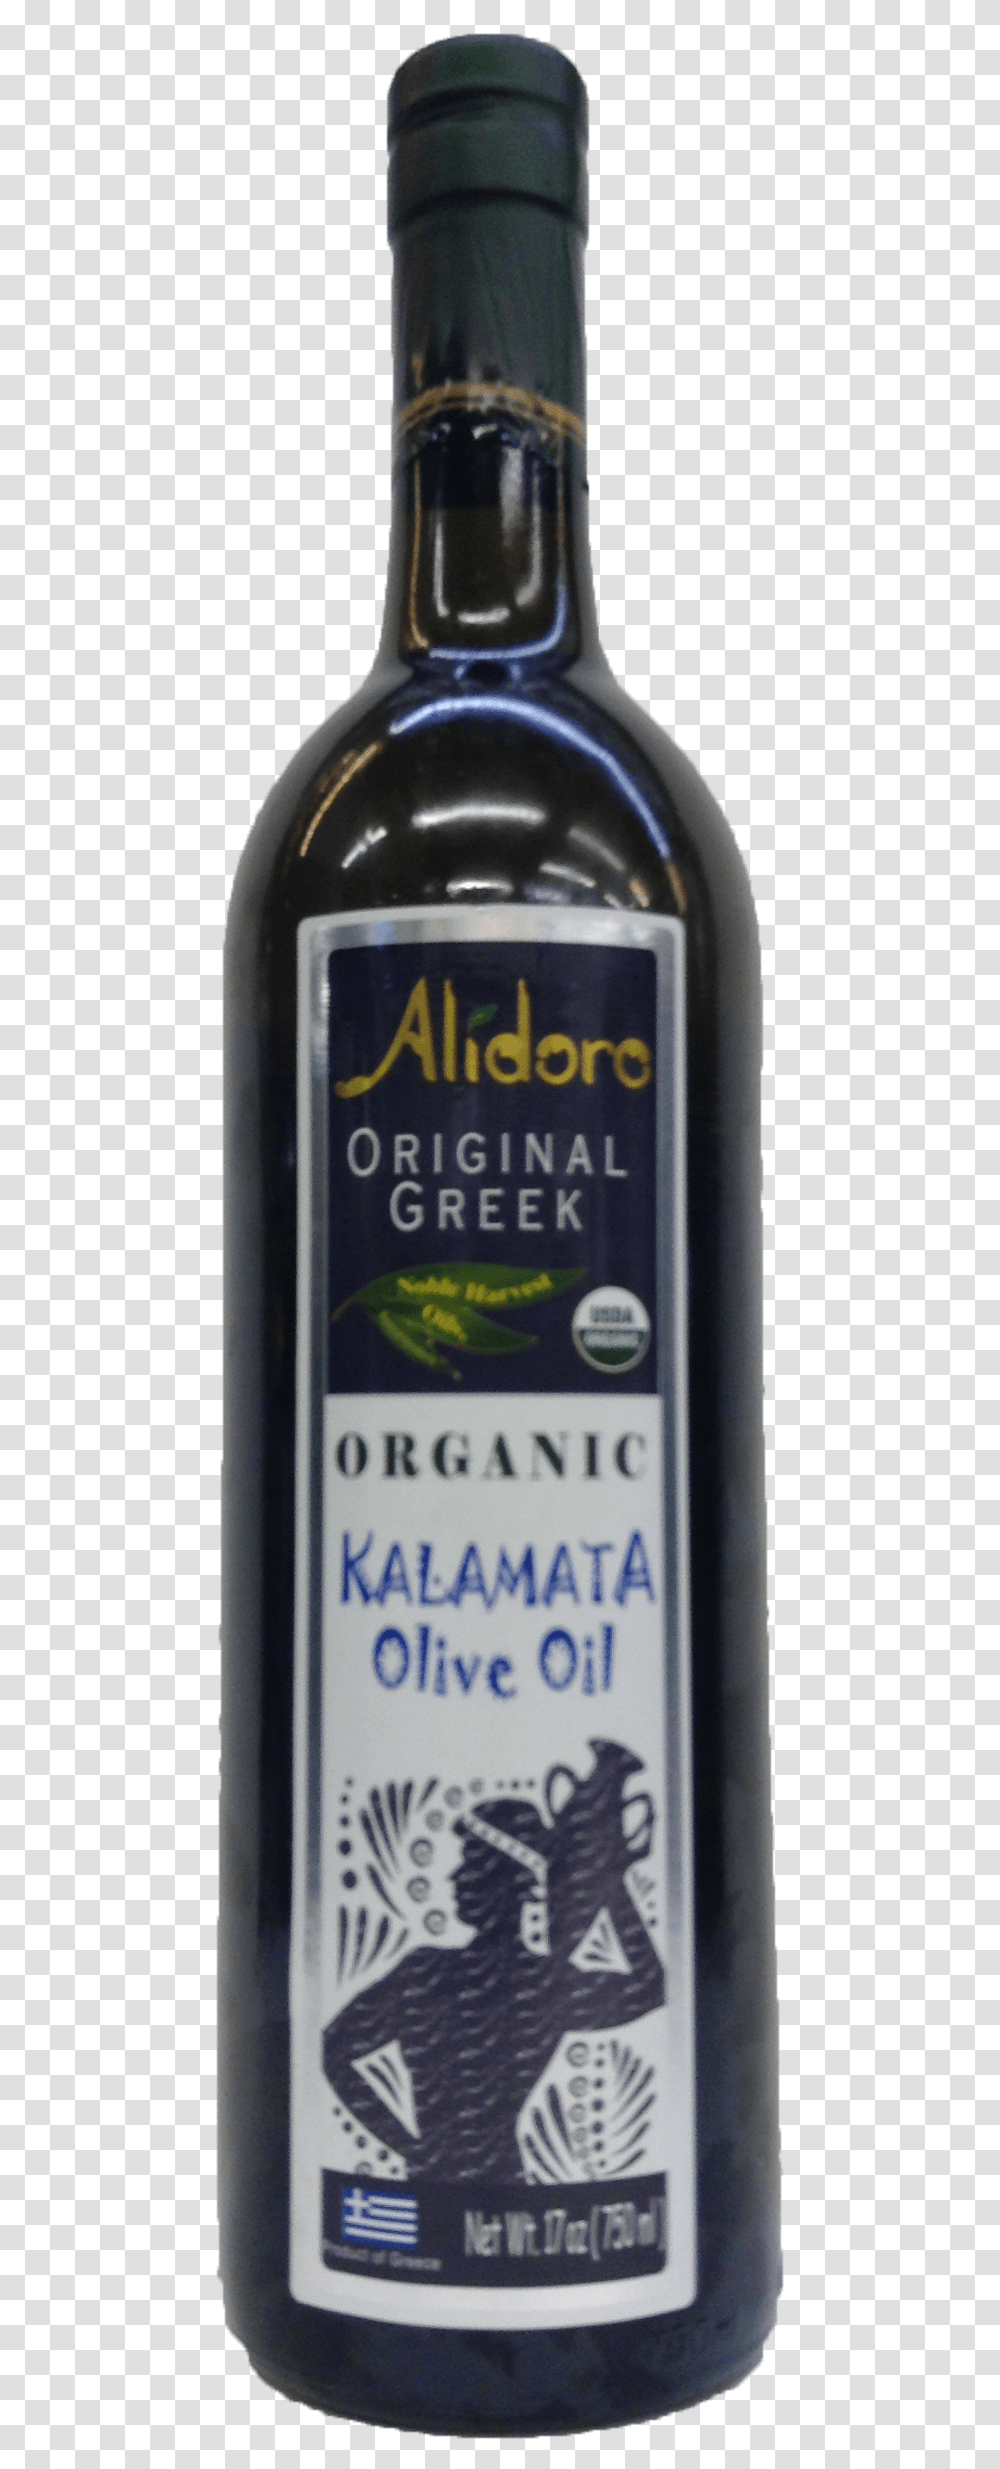 Organic Olive Oil Wine Bottle, Beer, Alcohol, Beverage, Drink Transparent Png